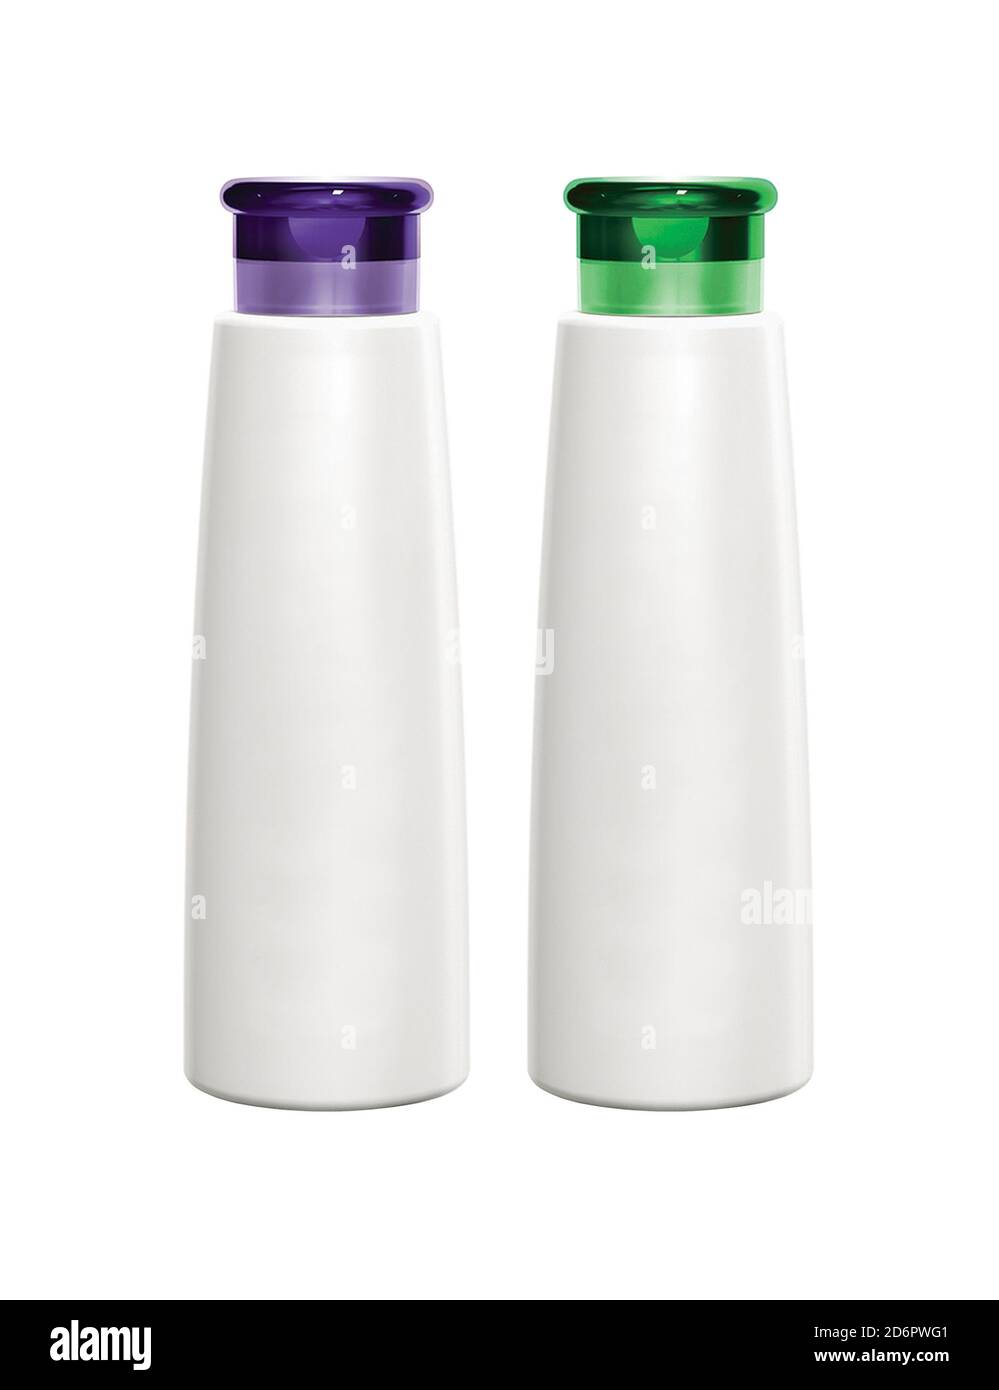 Dos envases de plástico para botellas de champú o gel de ducha Fotografía de  stock - Alamy